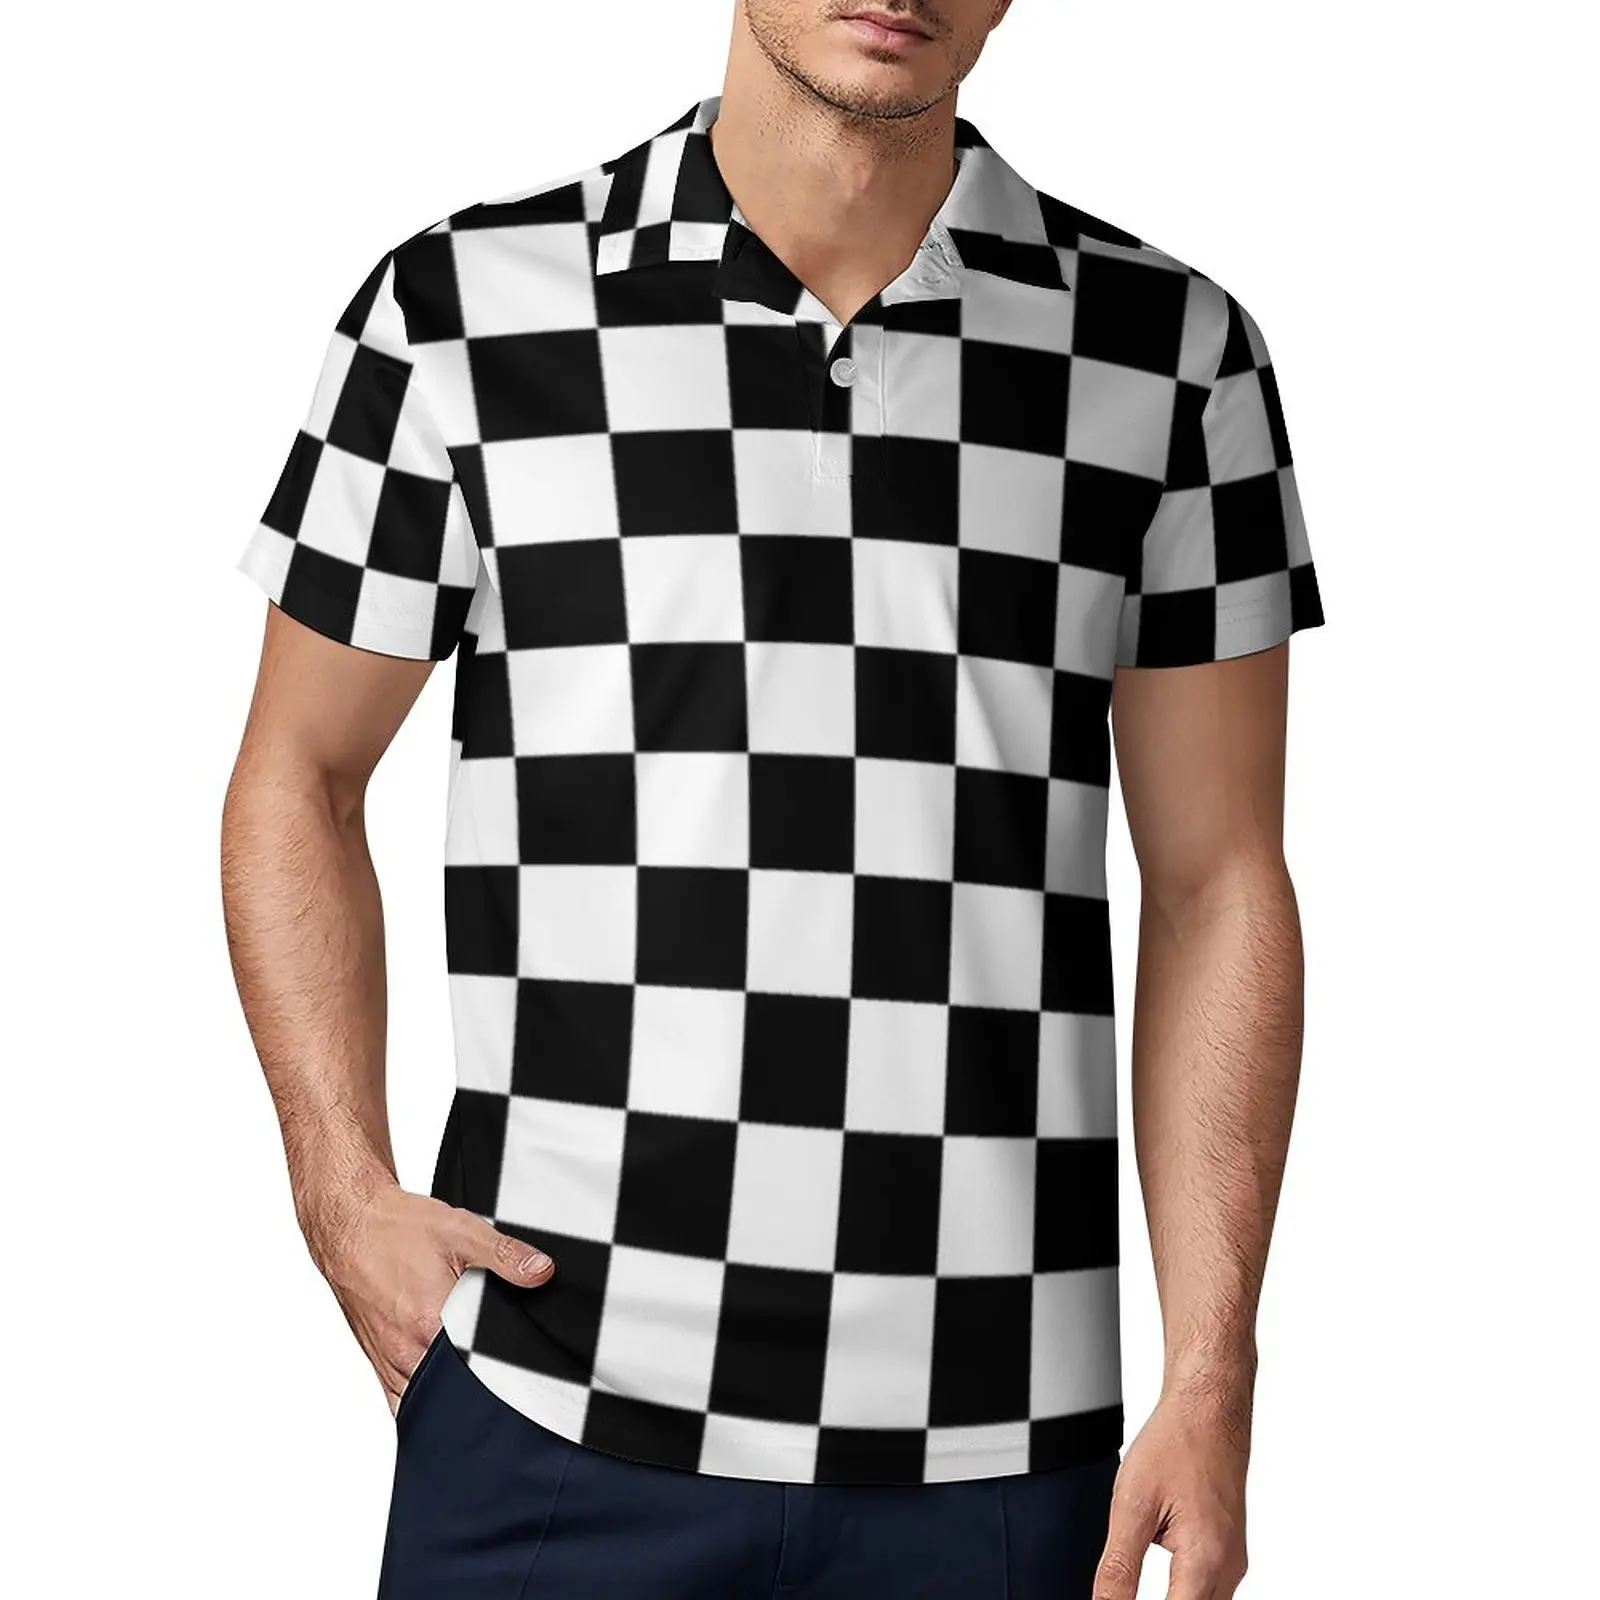 

Мужская рубашка-поло, веселые топы, с коротким рукавом, в белую и черную клетку